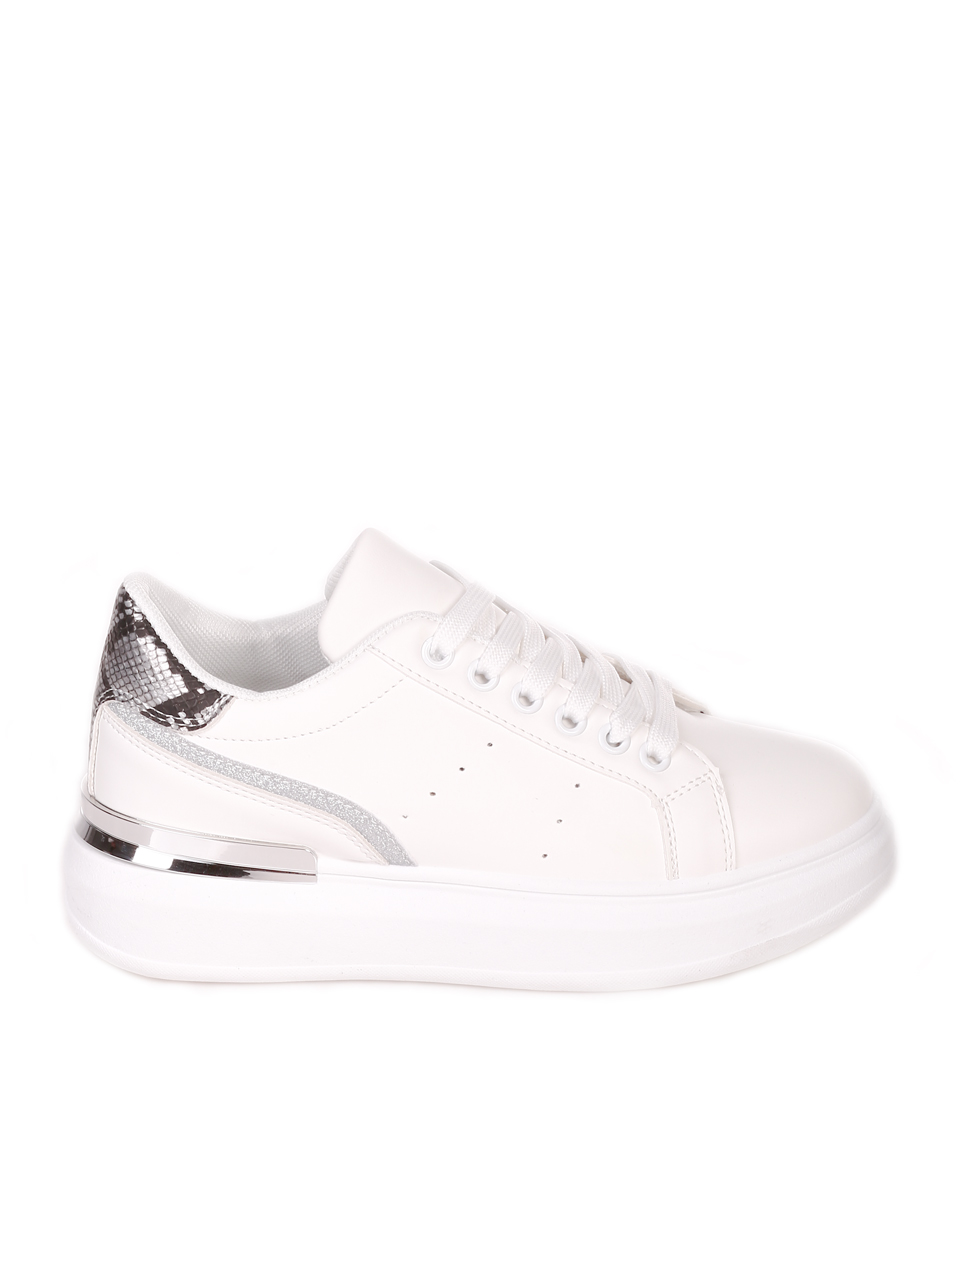 Ежедневни дамски обувки в бяло 3U-21001 white/grey